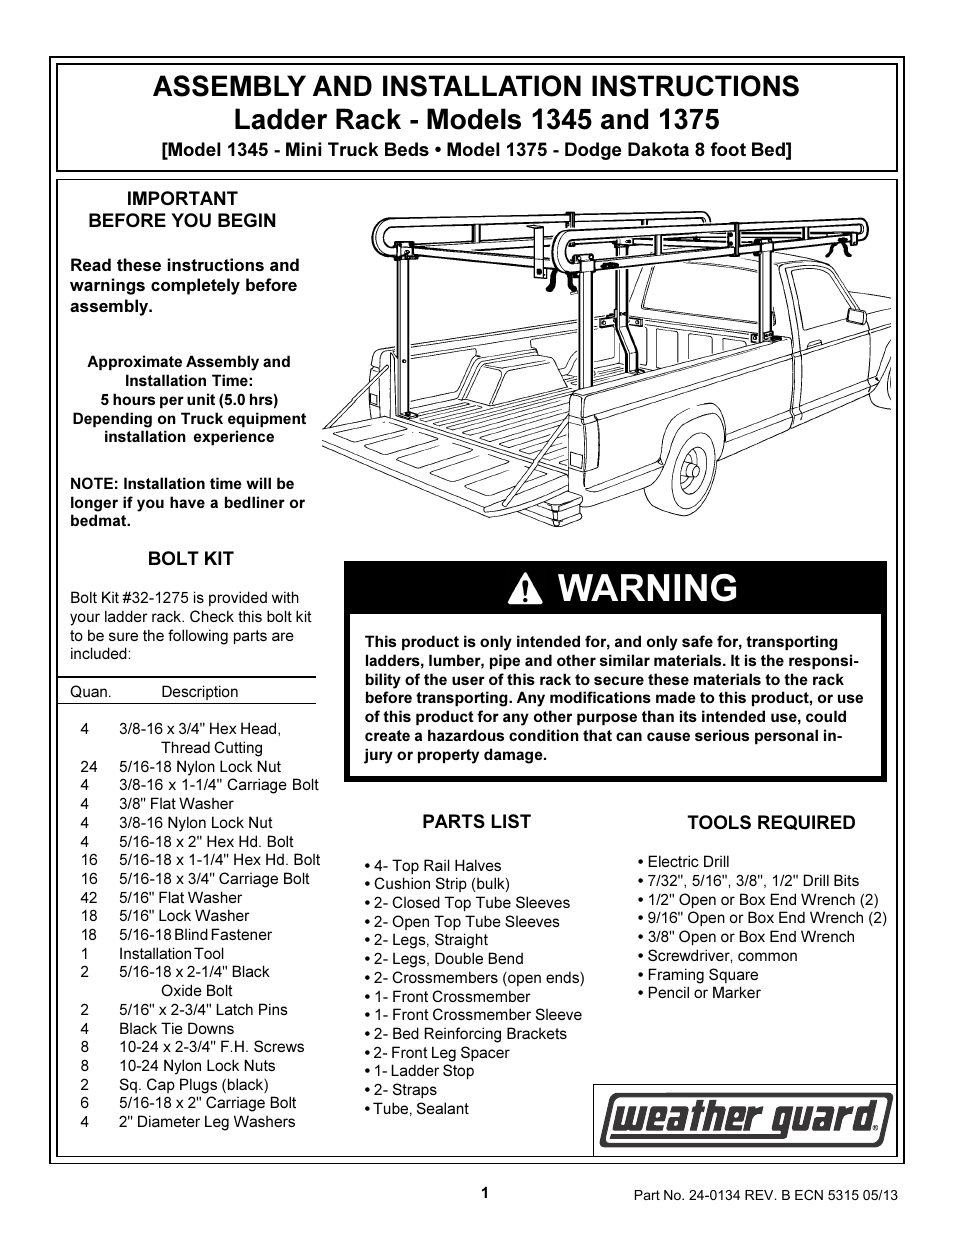 Model 1345 Ladder Rack System, Steel, Compact, Short Bed